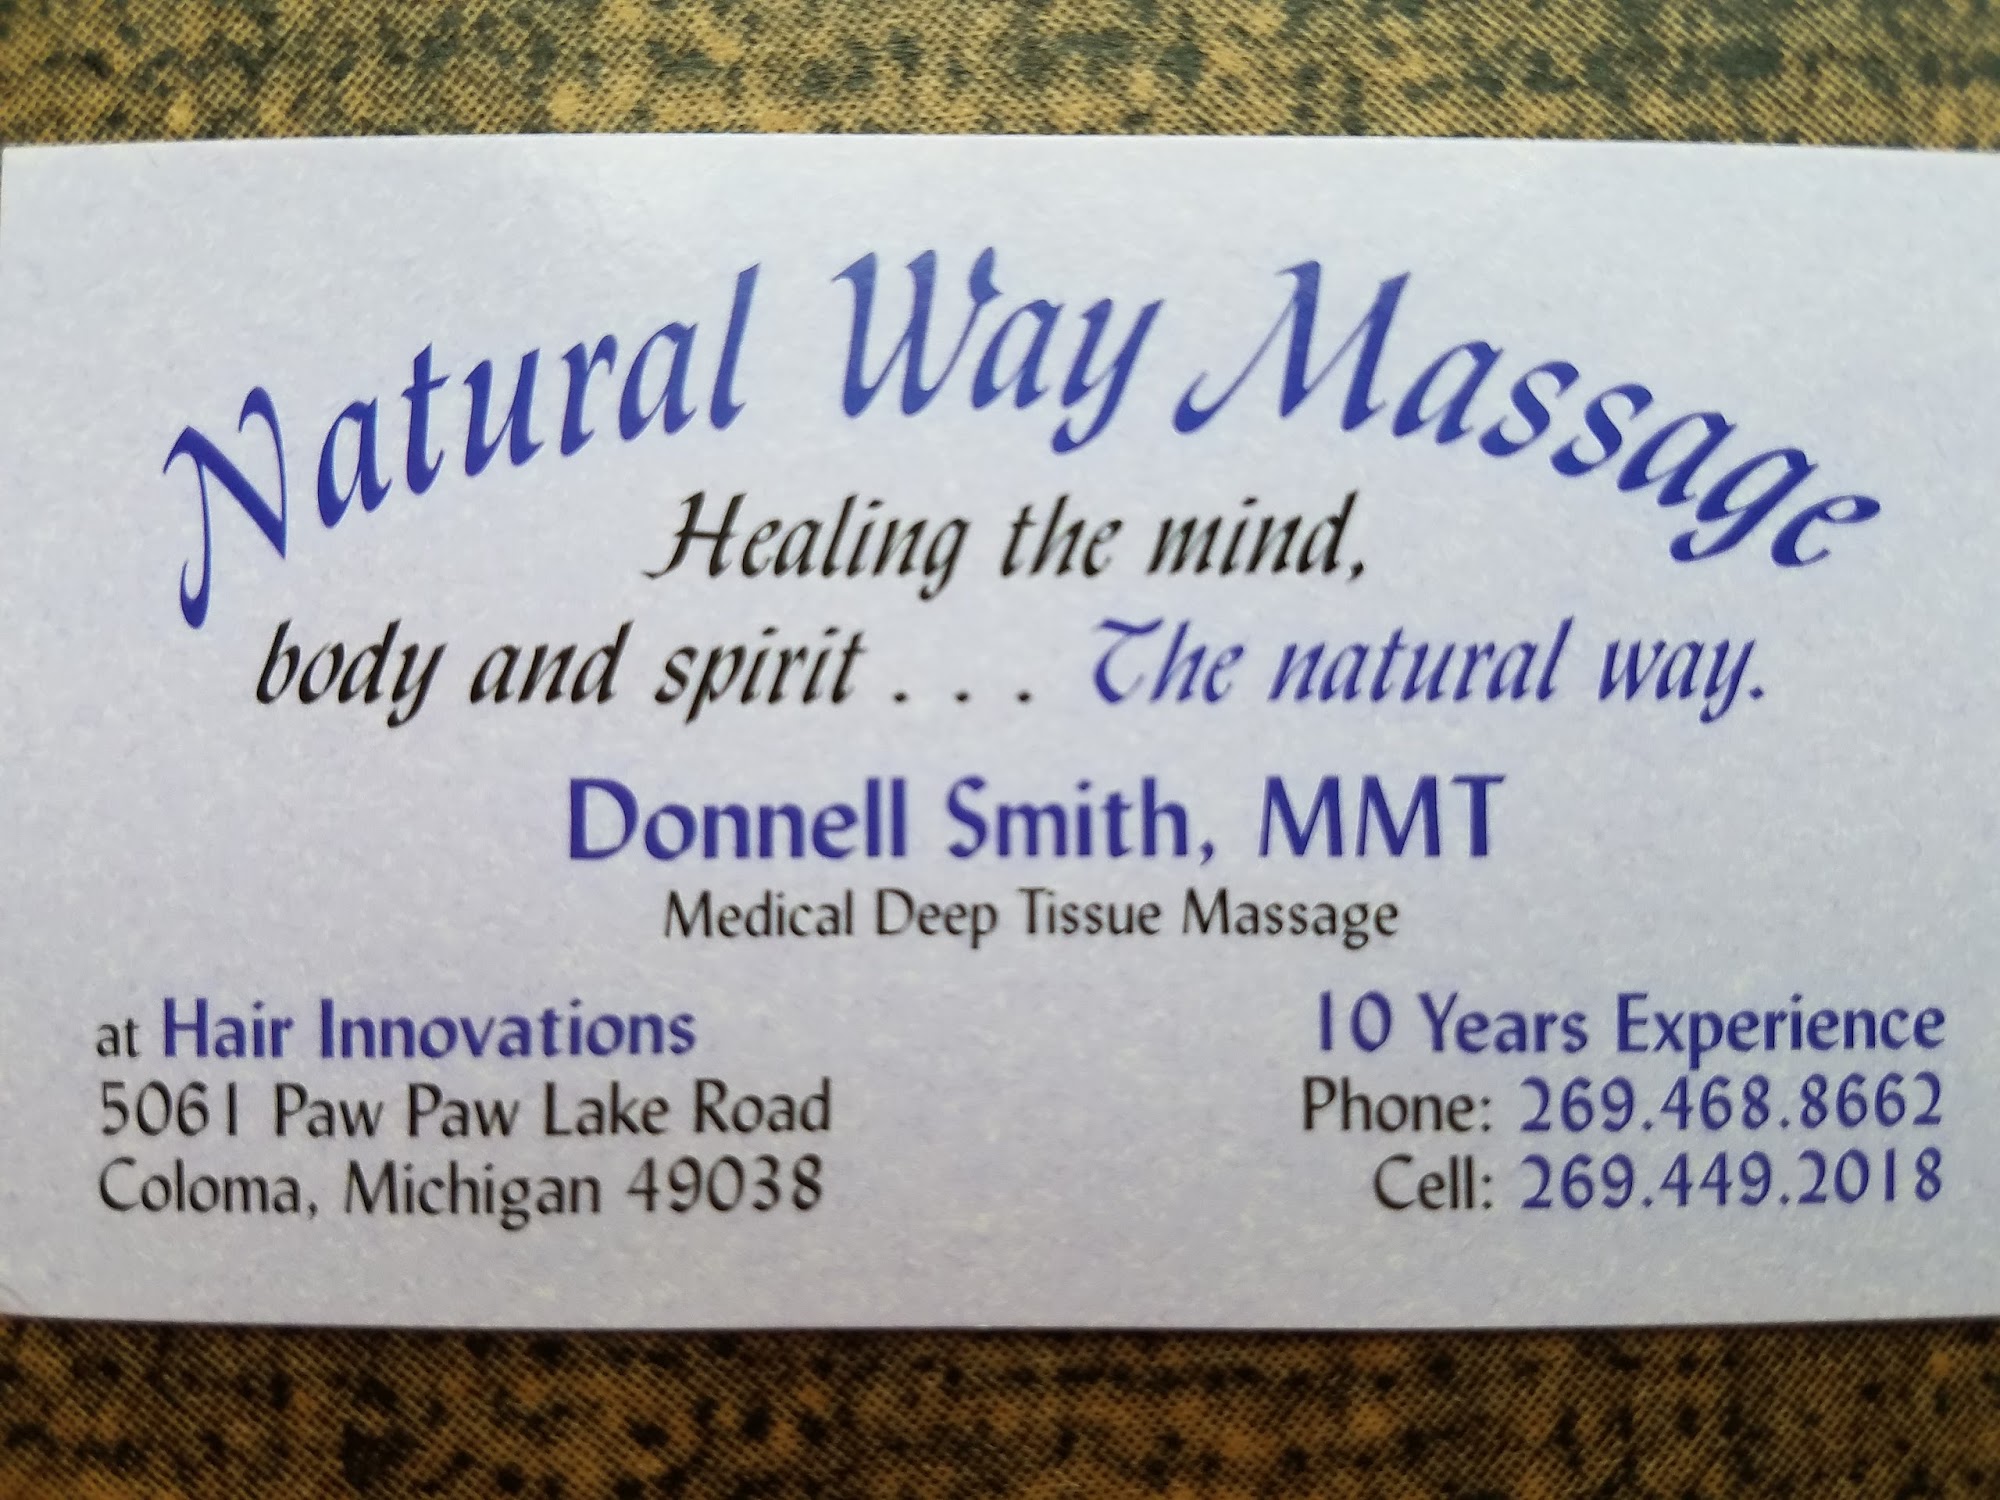 Natural Way Massage 5061 Paw Paw Lake Rd, Coloma Michigan 49038